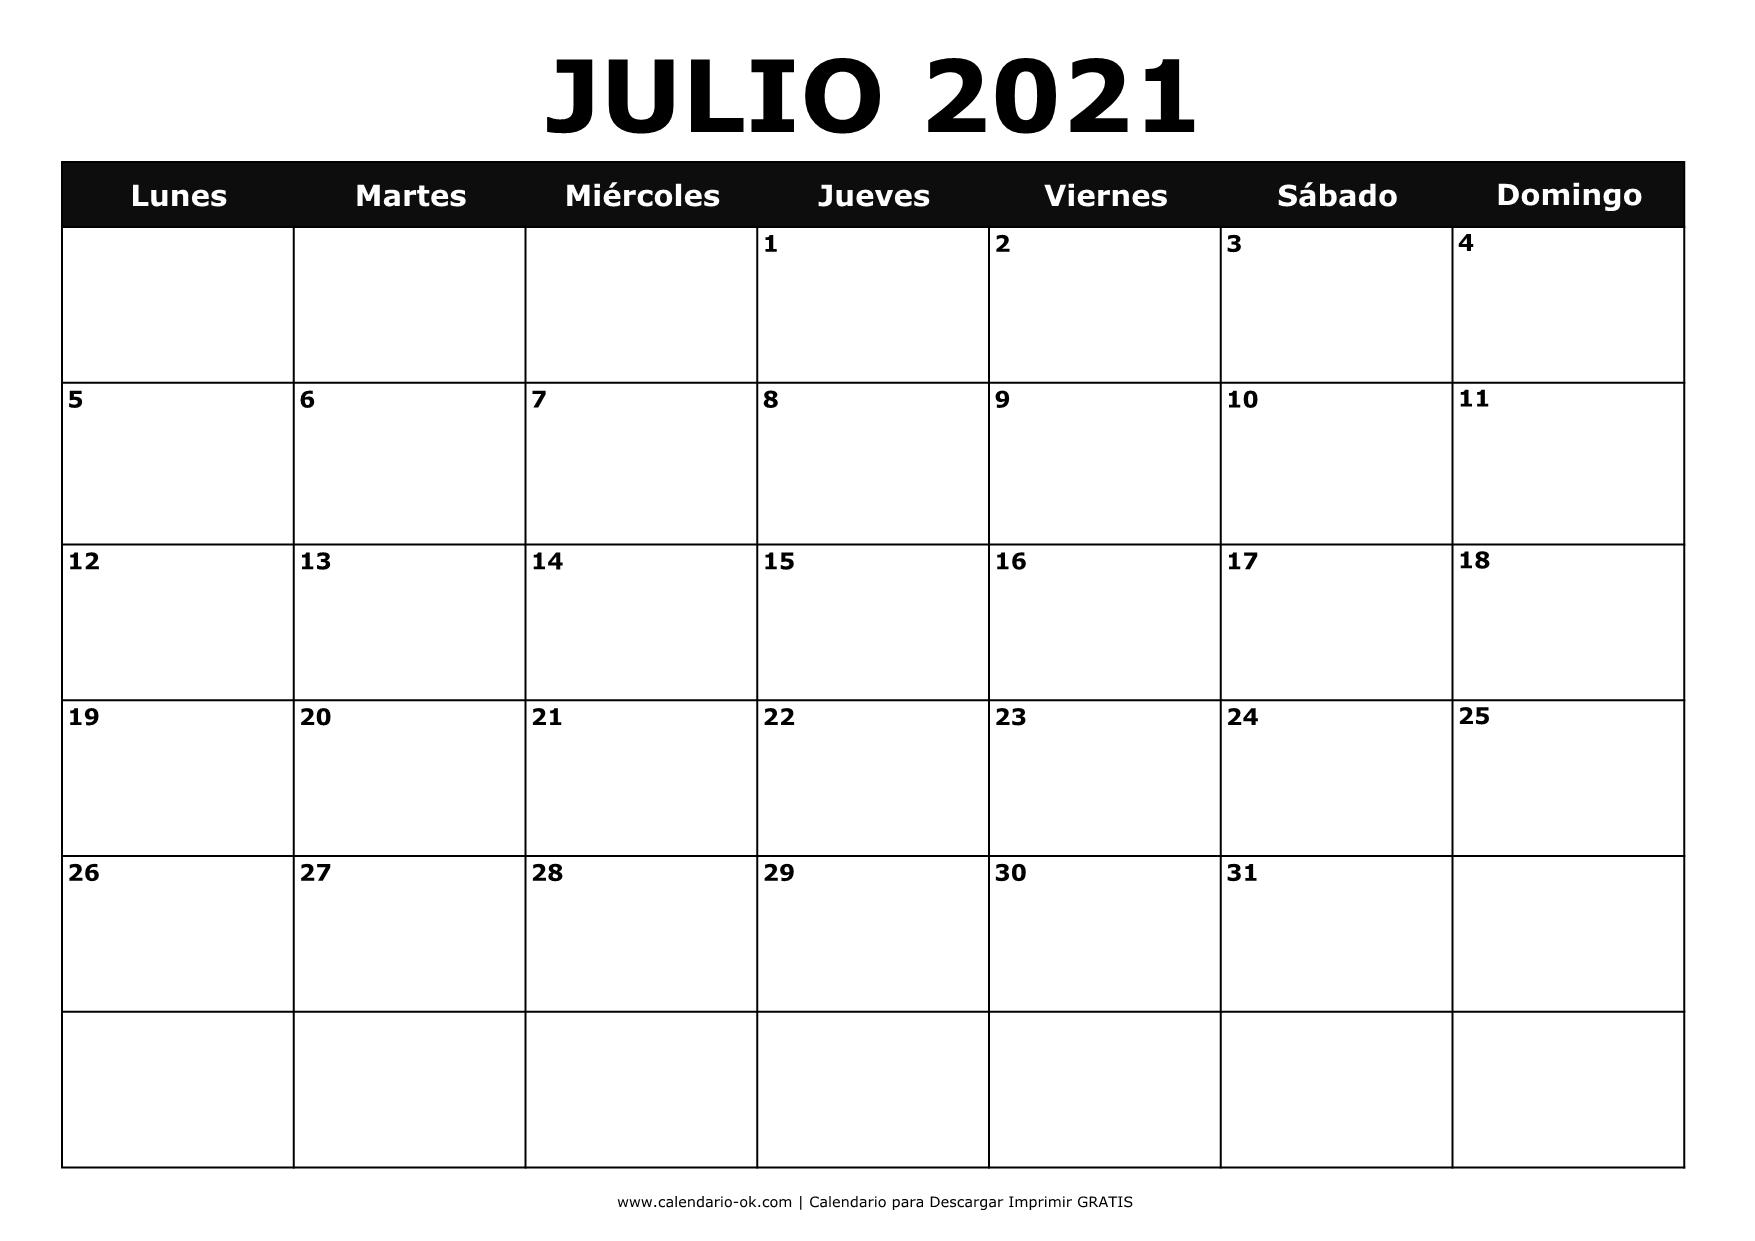 JULIO 2021 BLANCO y NEGRO